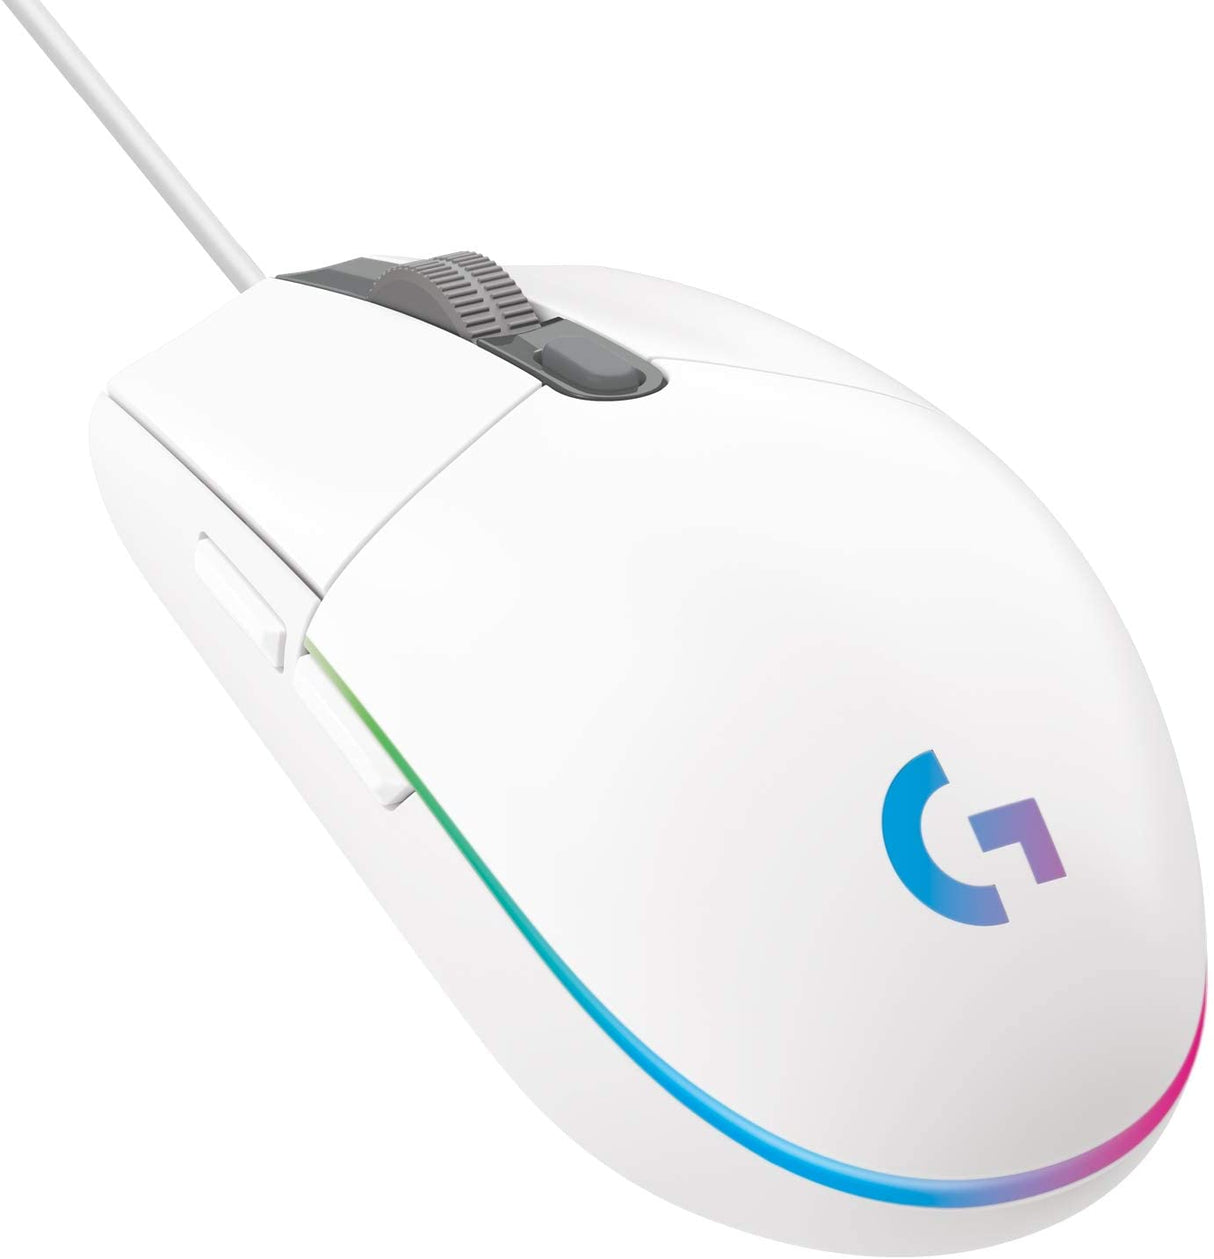 Logitech G102 LightSync Gaming Mouse (Black | White)